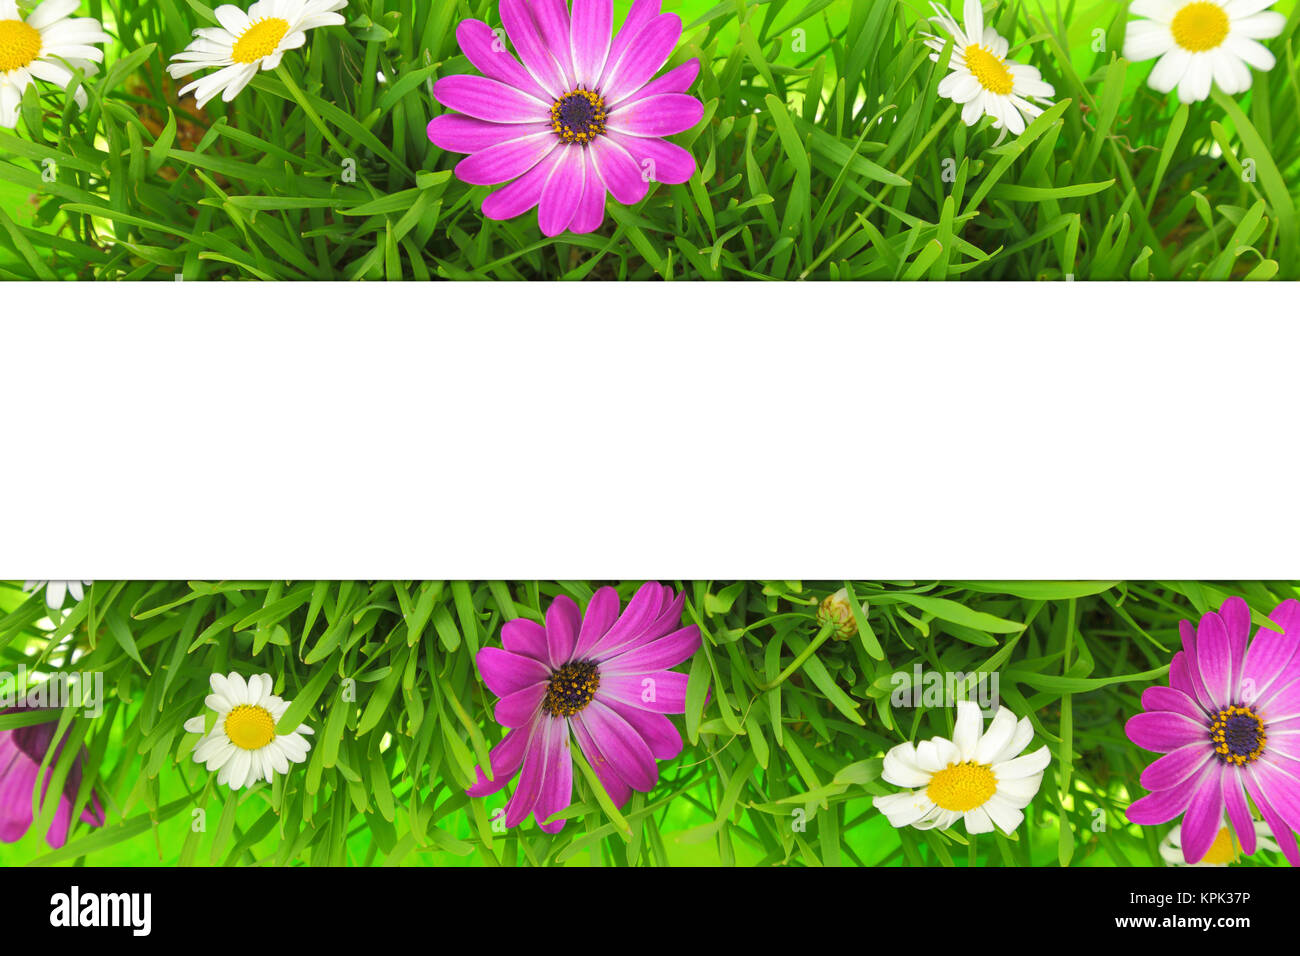 Bannière sur herbe, fleurs roses et blanches background Banque D'Images